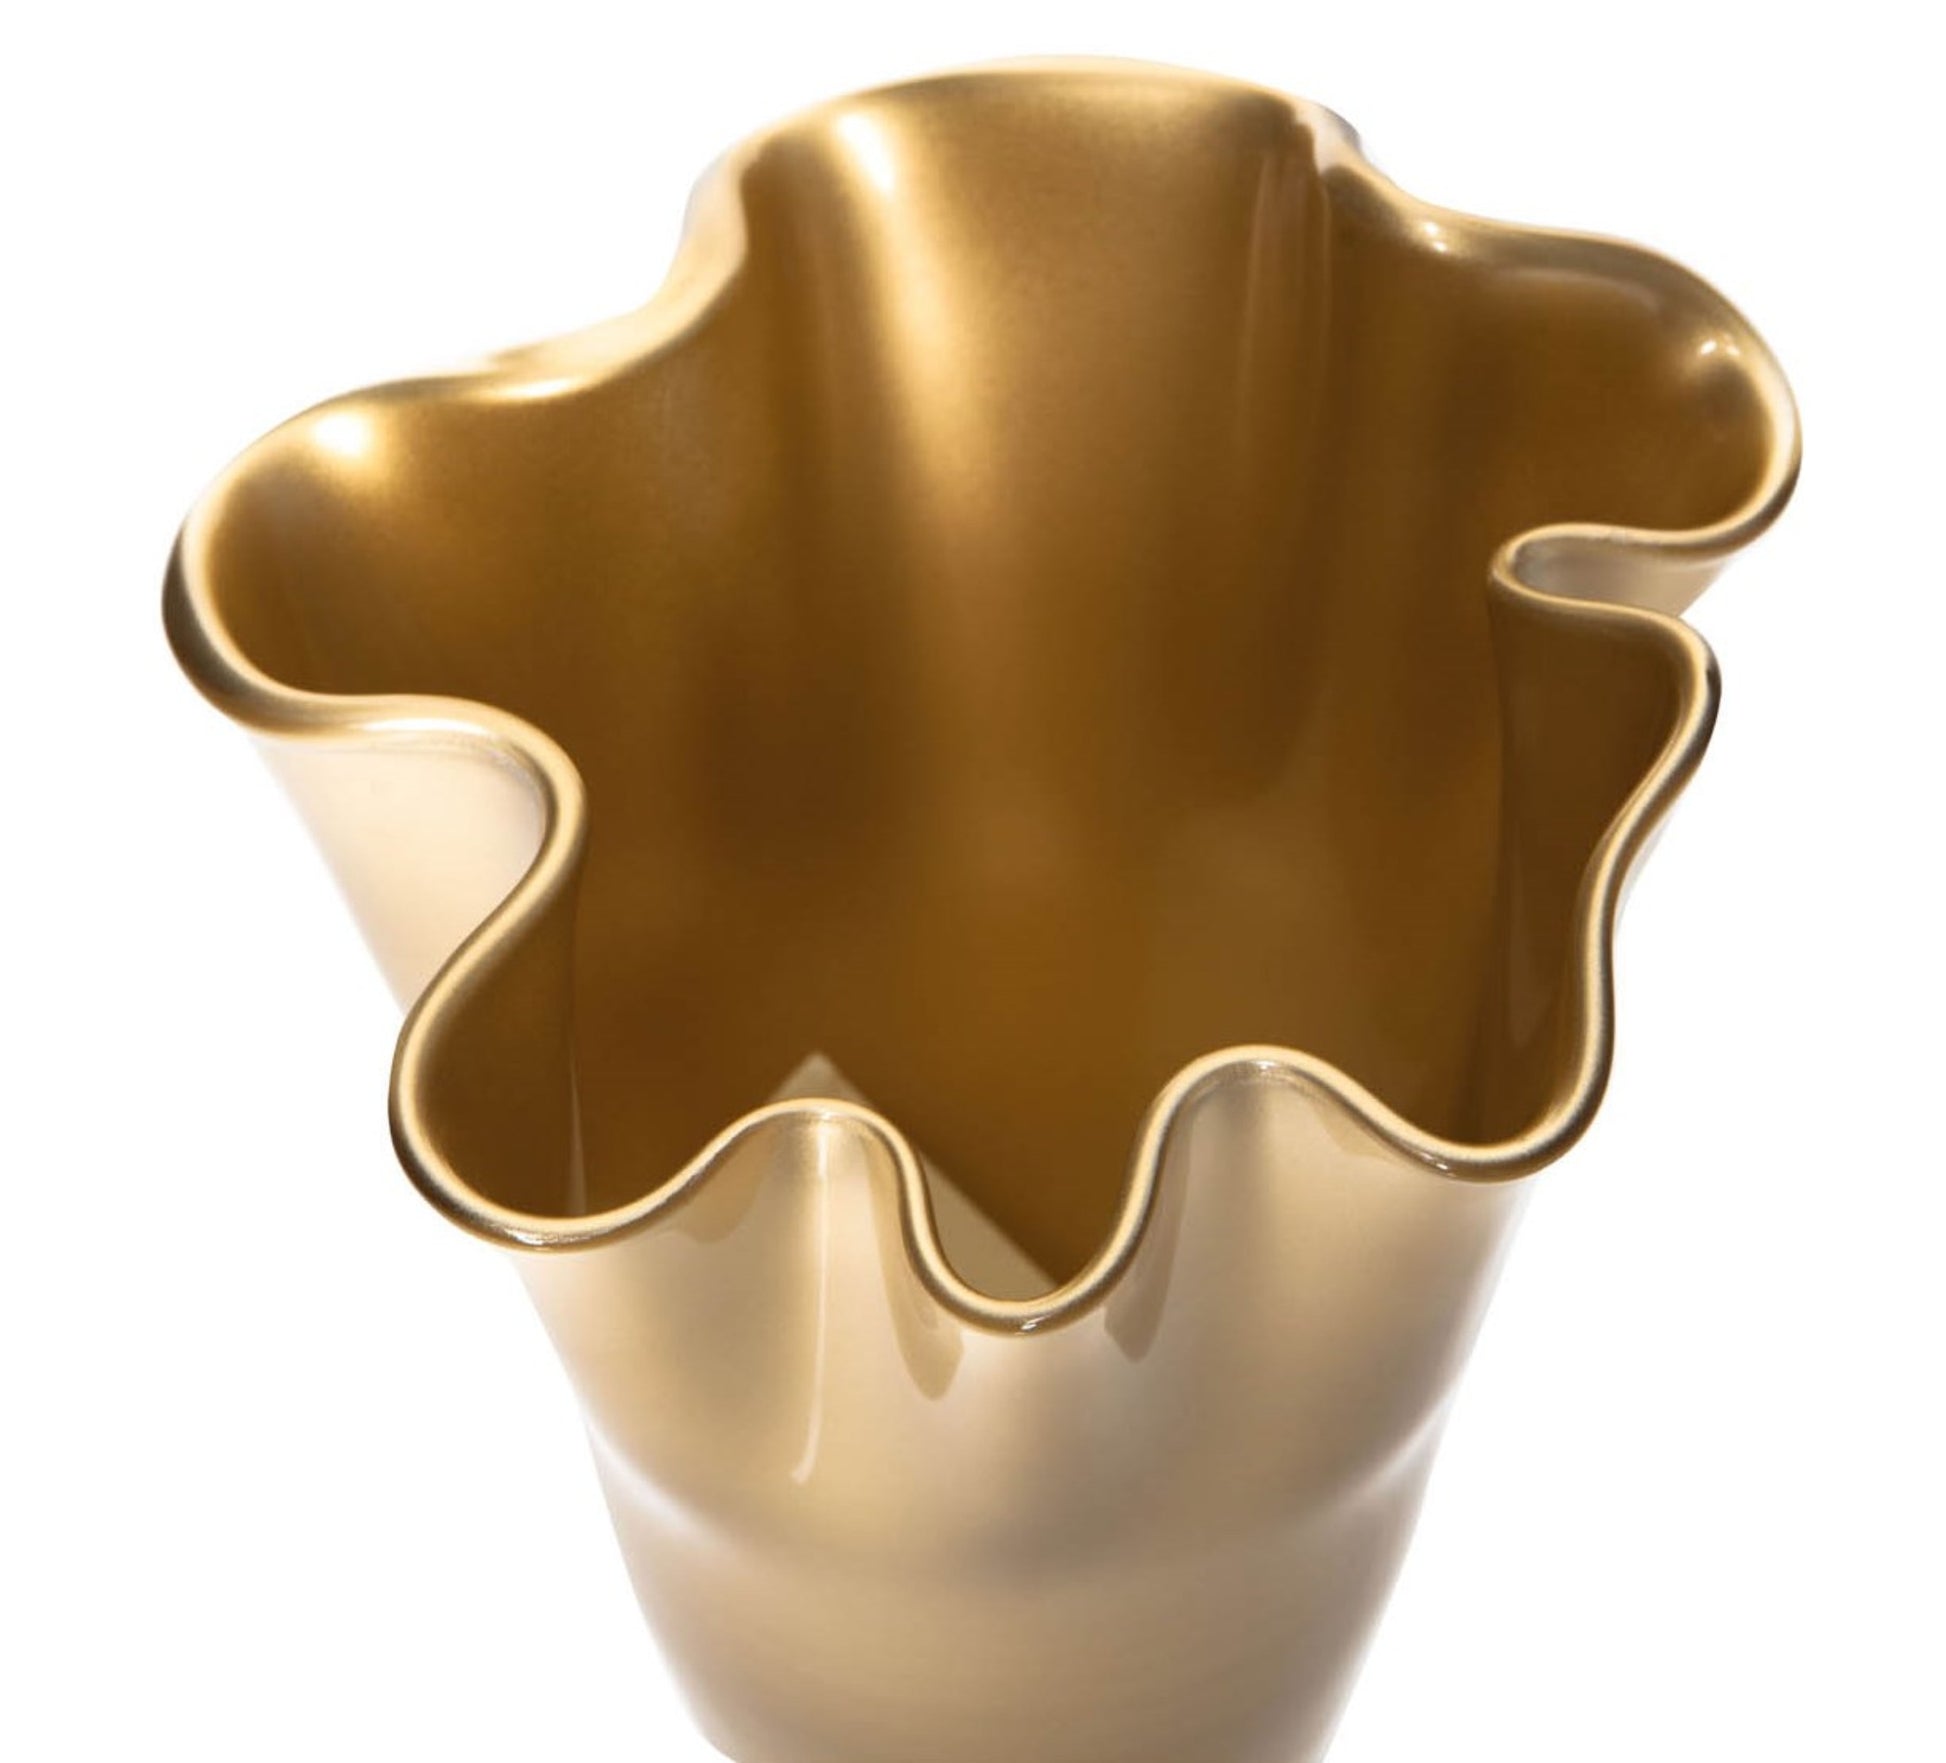 Vase aus Glas in Farbe gold metallic mit gewelltem Rand